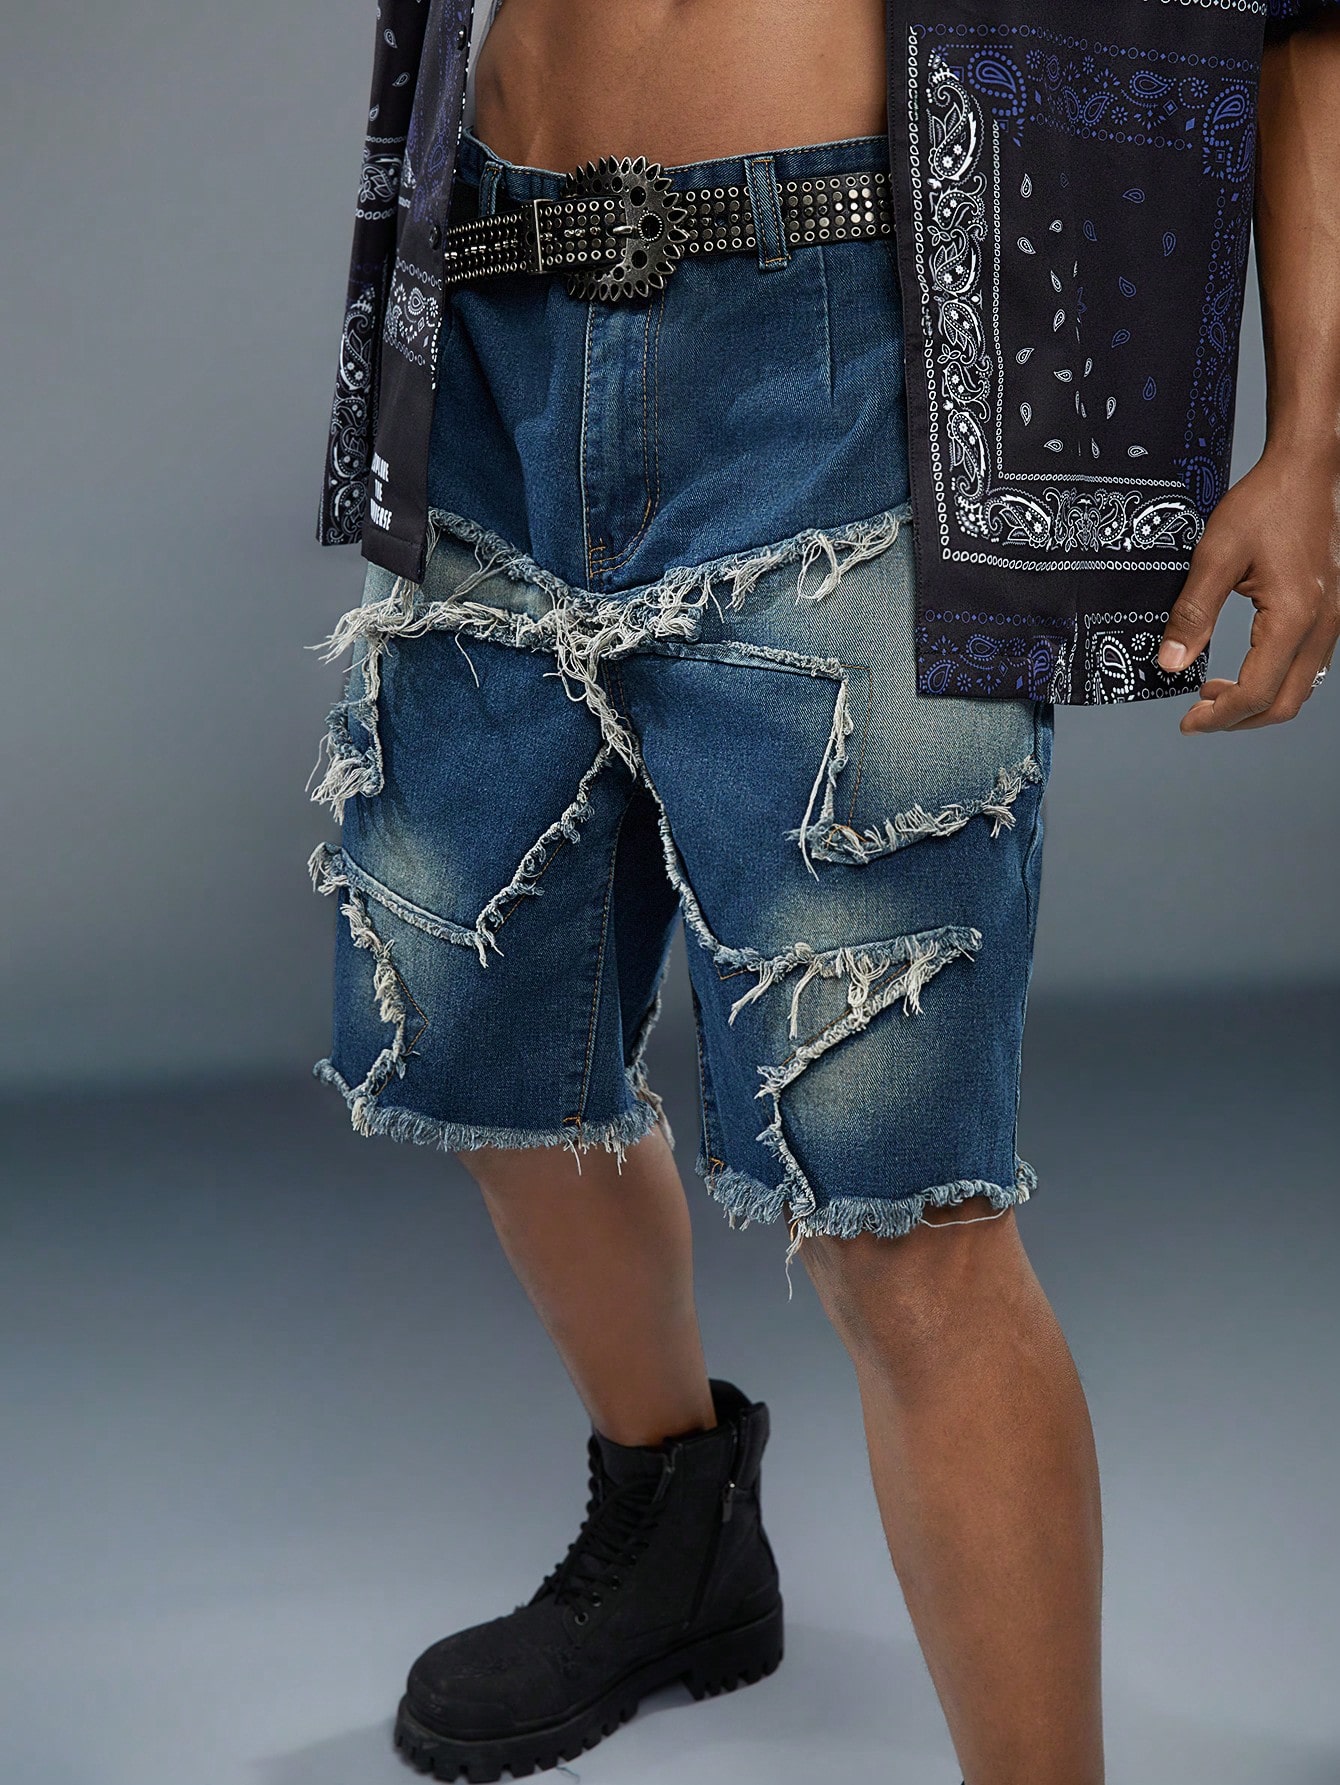 Мужские джинсовые шорты свободного кроя Manfinity EMRG с аппликацией в виде звезд и бахромой по низу, темная стирка